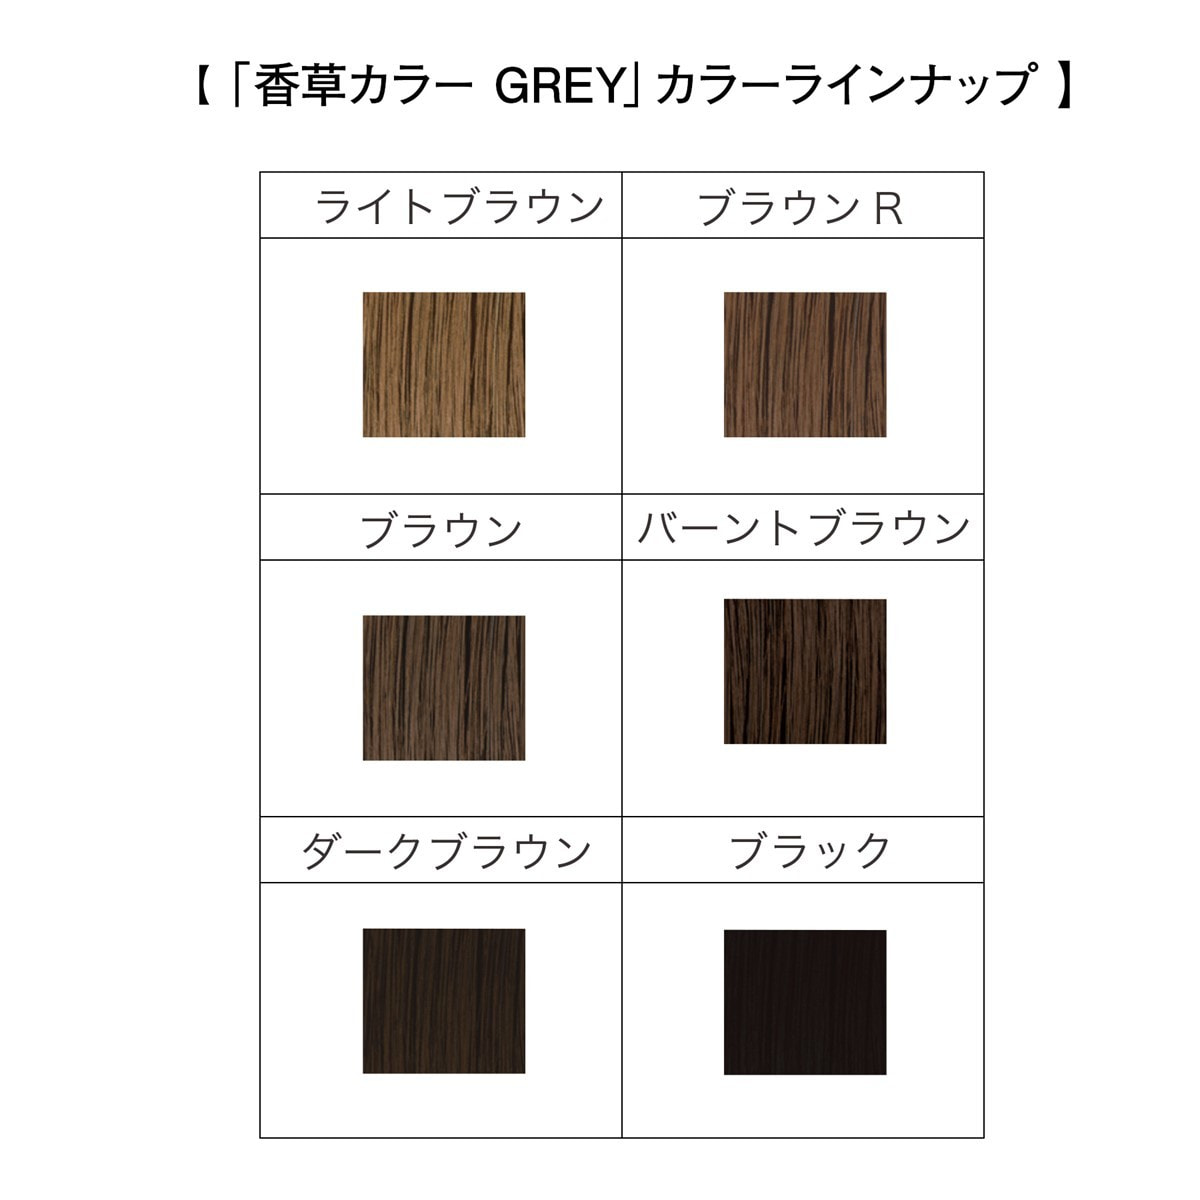 香草カラー GREY（水溶き）ブラウンR 300g【医薬部外品】の卸・通販 